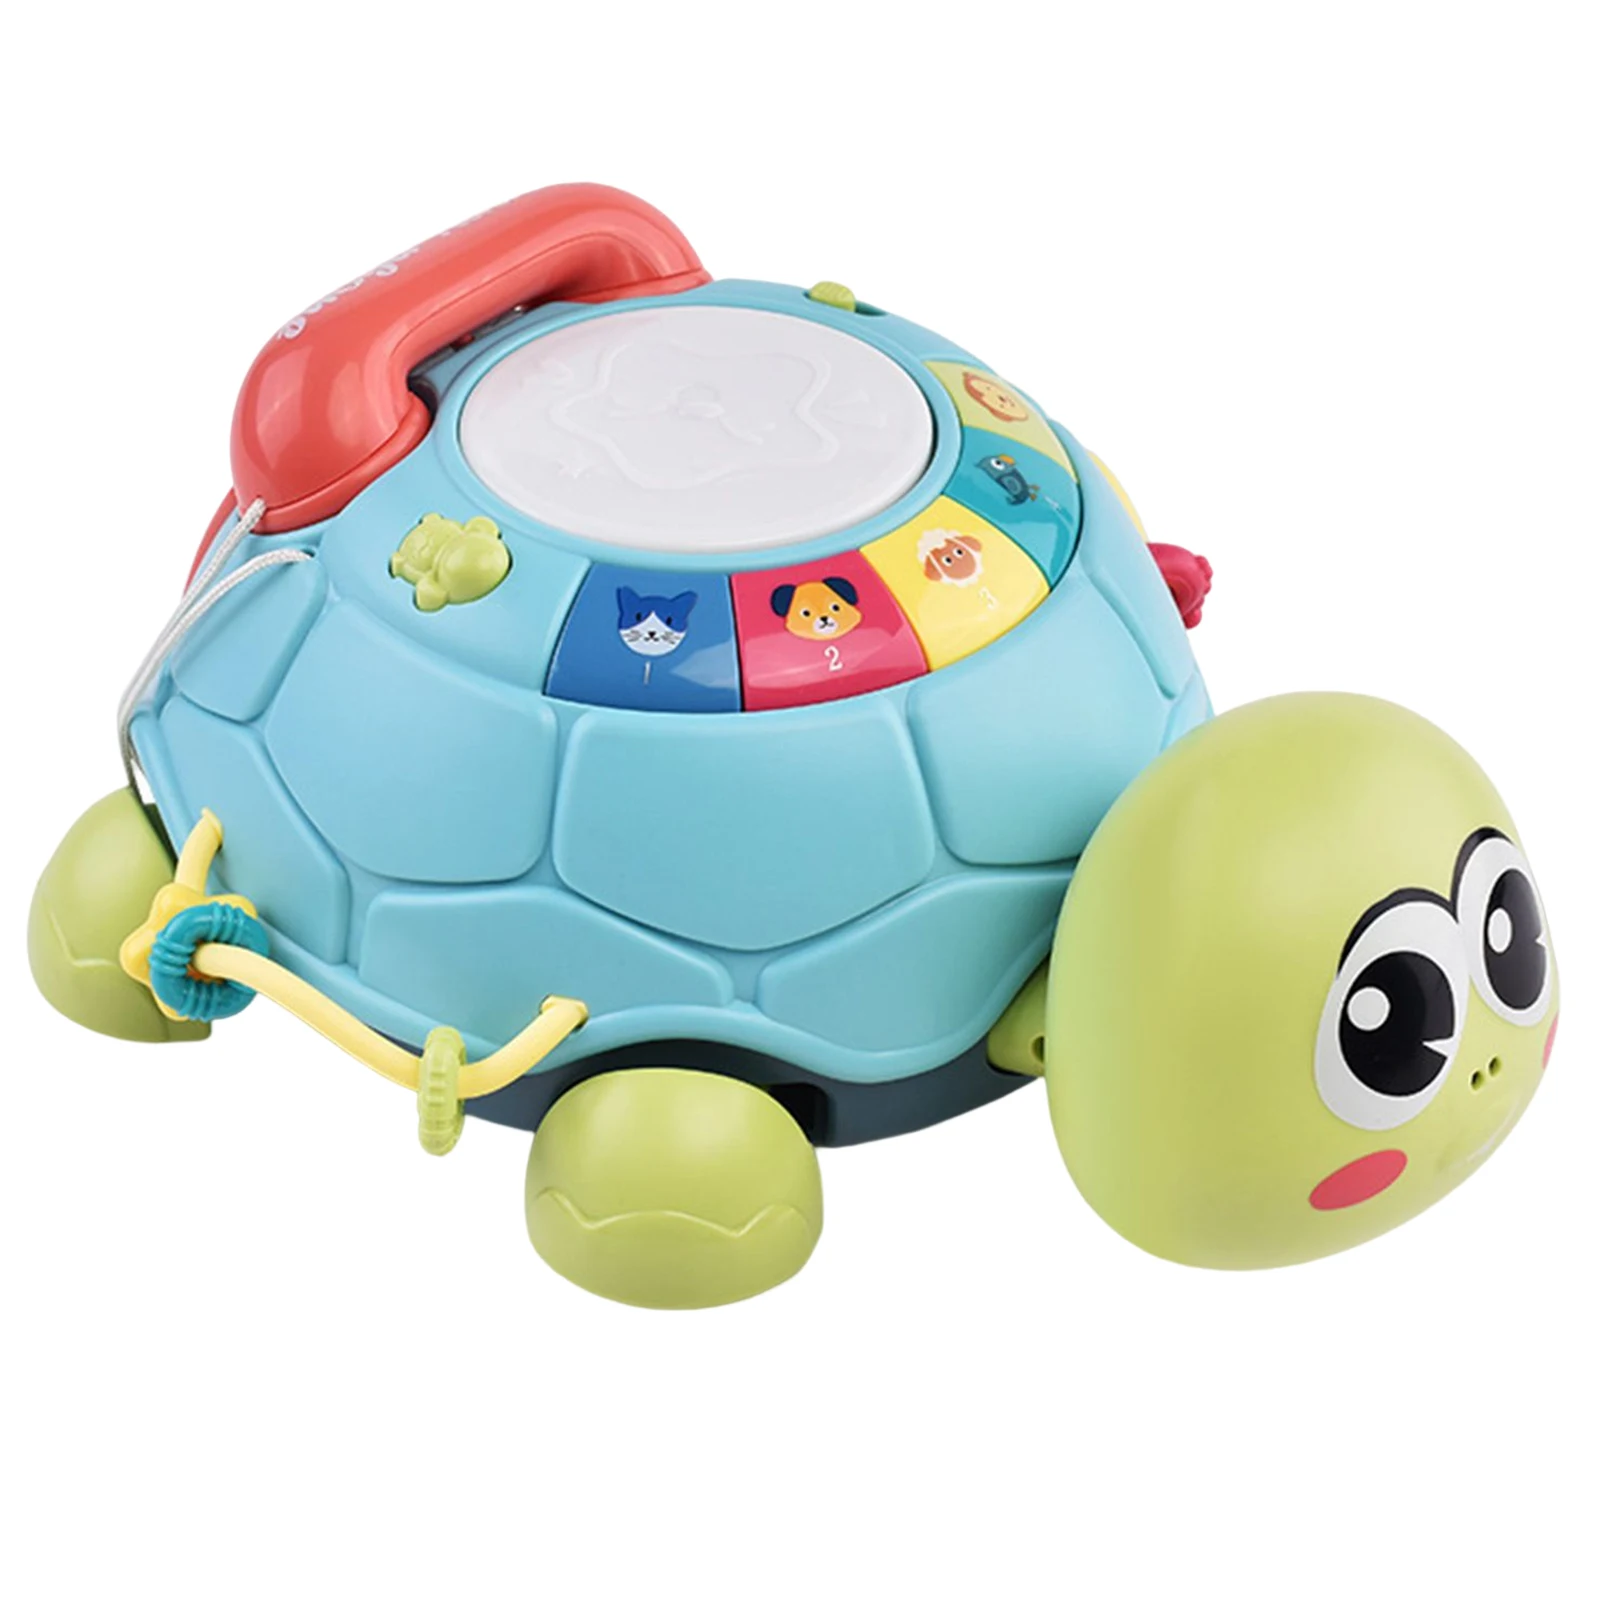 Juguetes de tortuga musicales para bebé, coordinación ocular y habilidad cognitiva, regalo para Navidad, cumpleaños y Año Nuevo